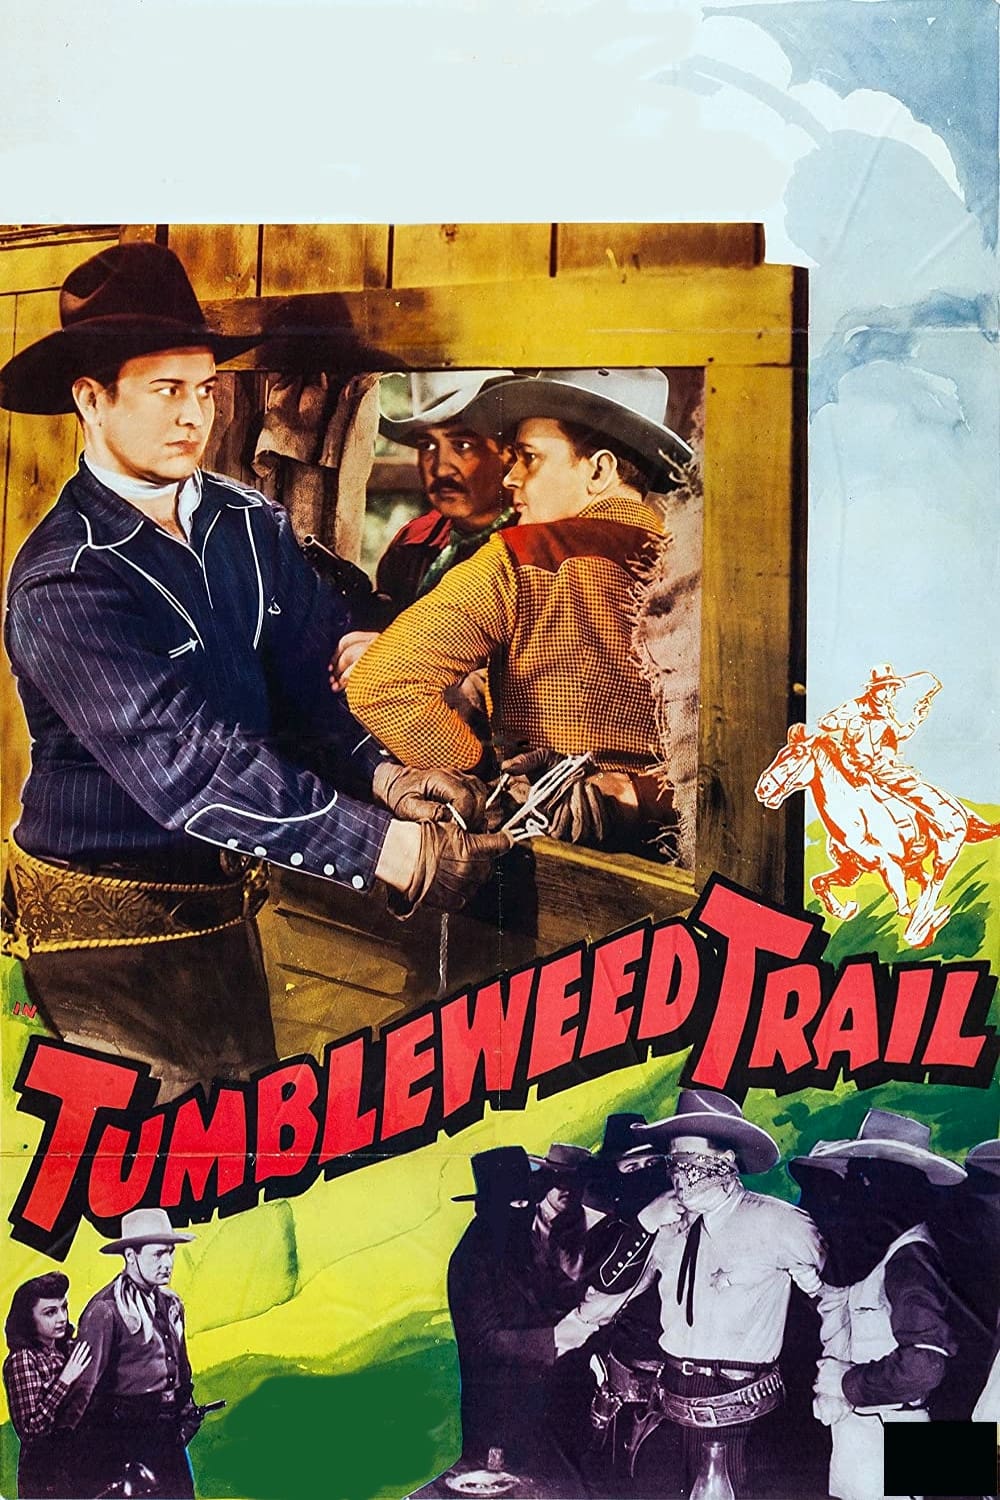 Tumbleweed Trail (1942)